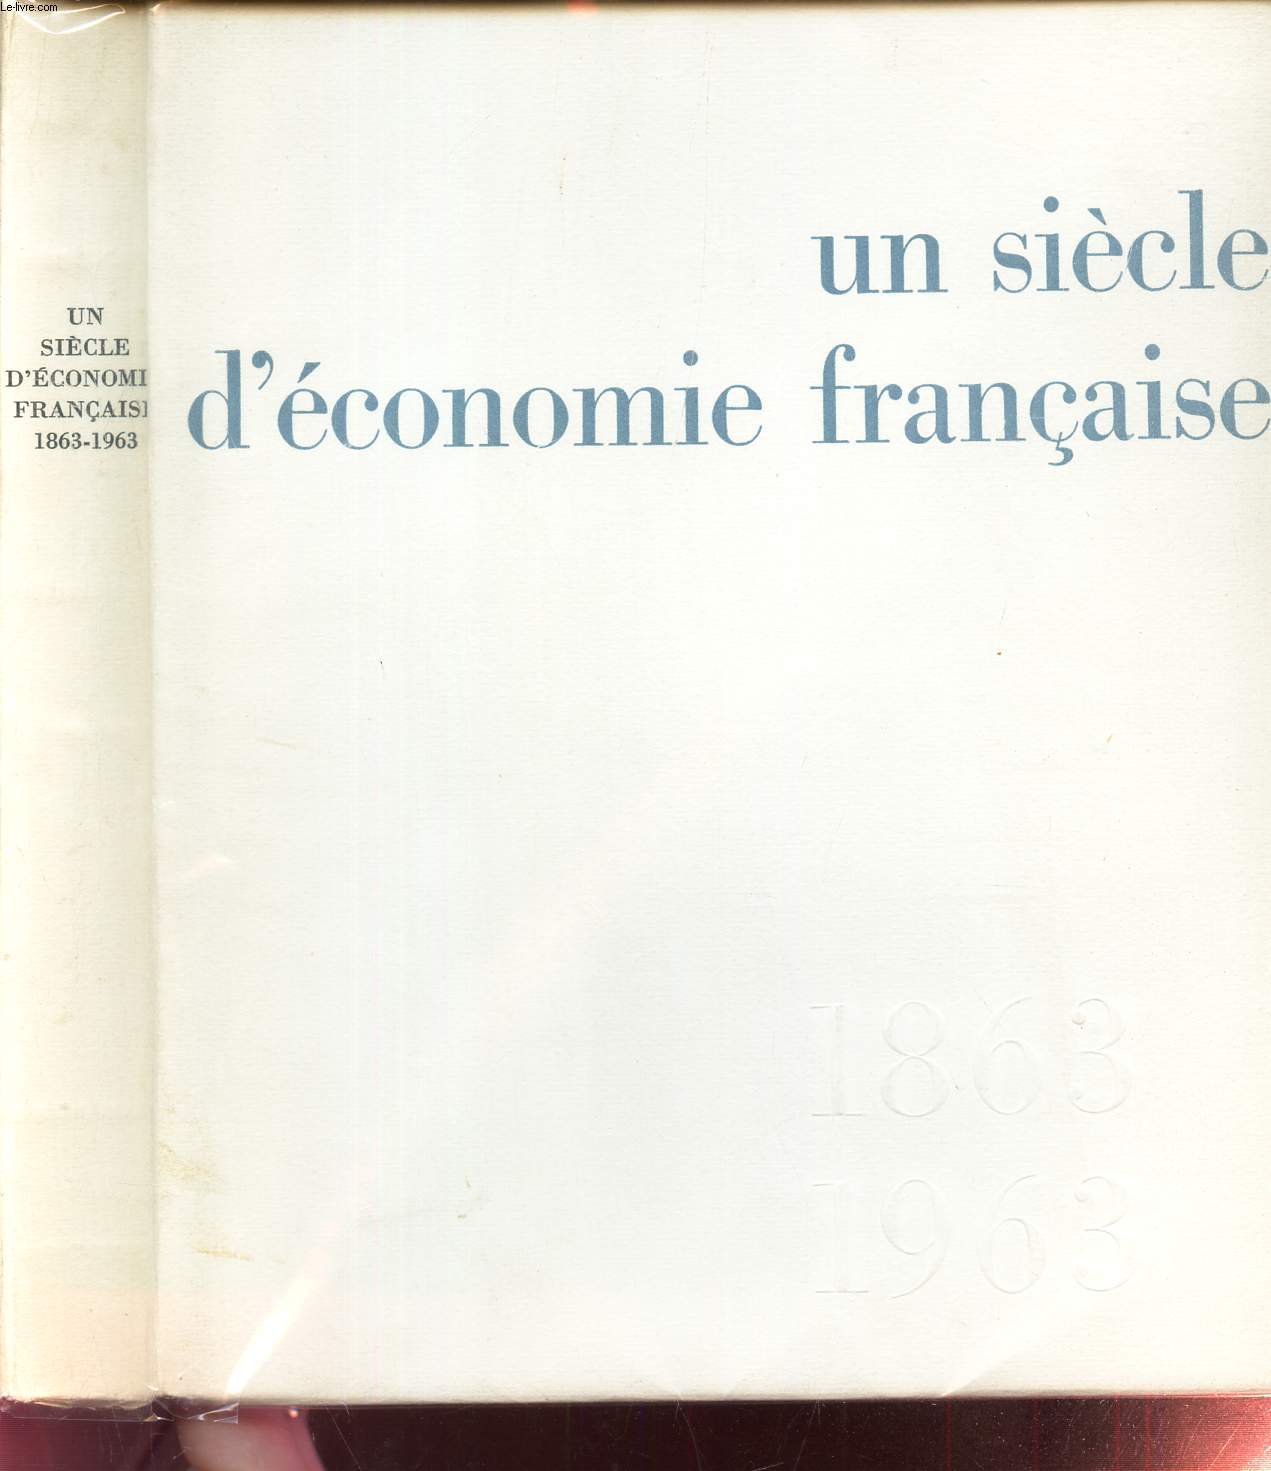 UN SIECLE D'ECONOMIE FRANCAISE - 1863-1963.